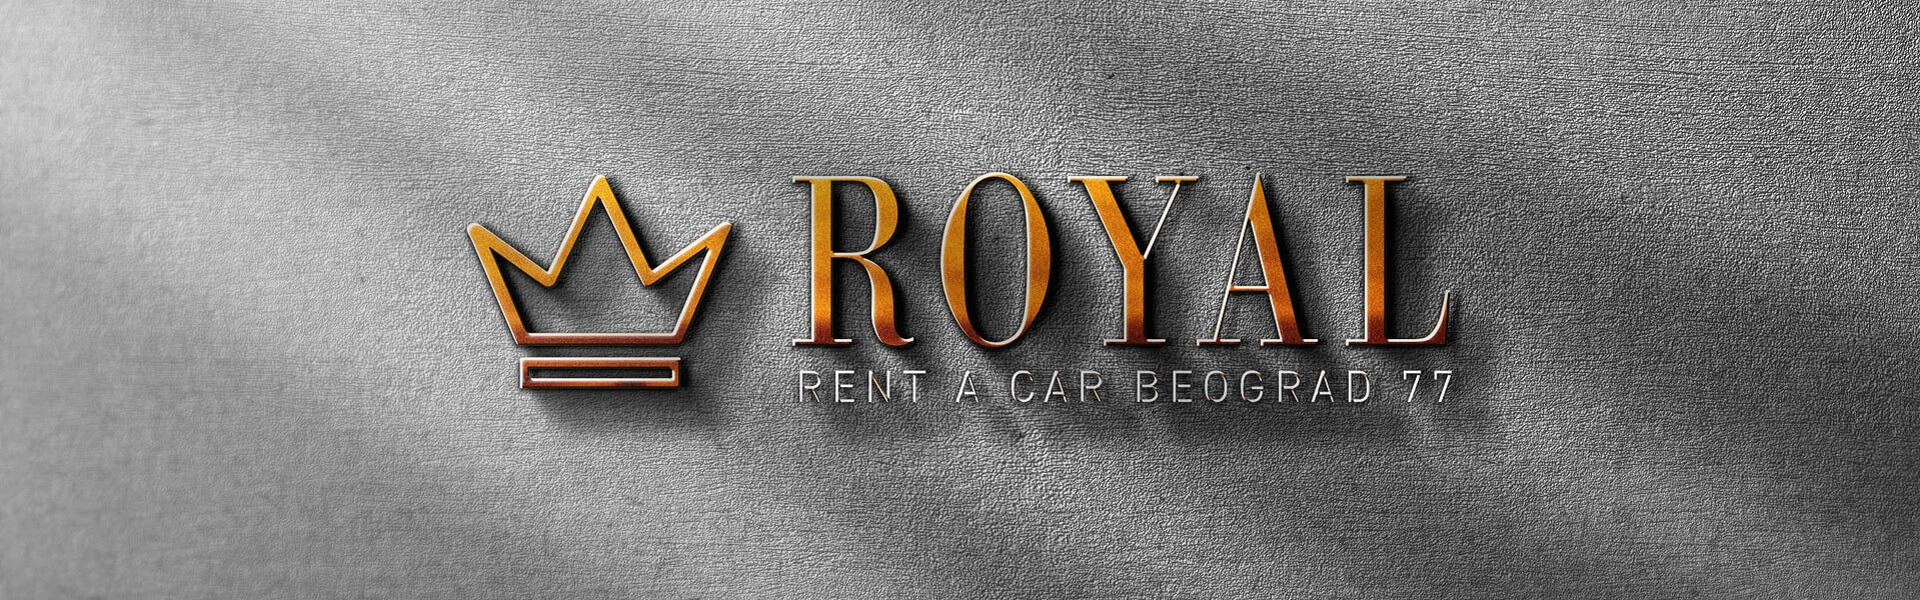 Royal Car Rental Group | Van rent | Car rental Beograd Royal